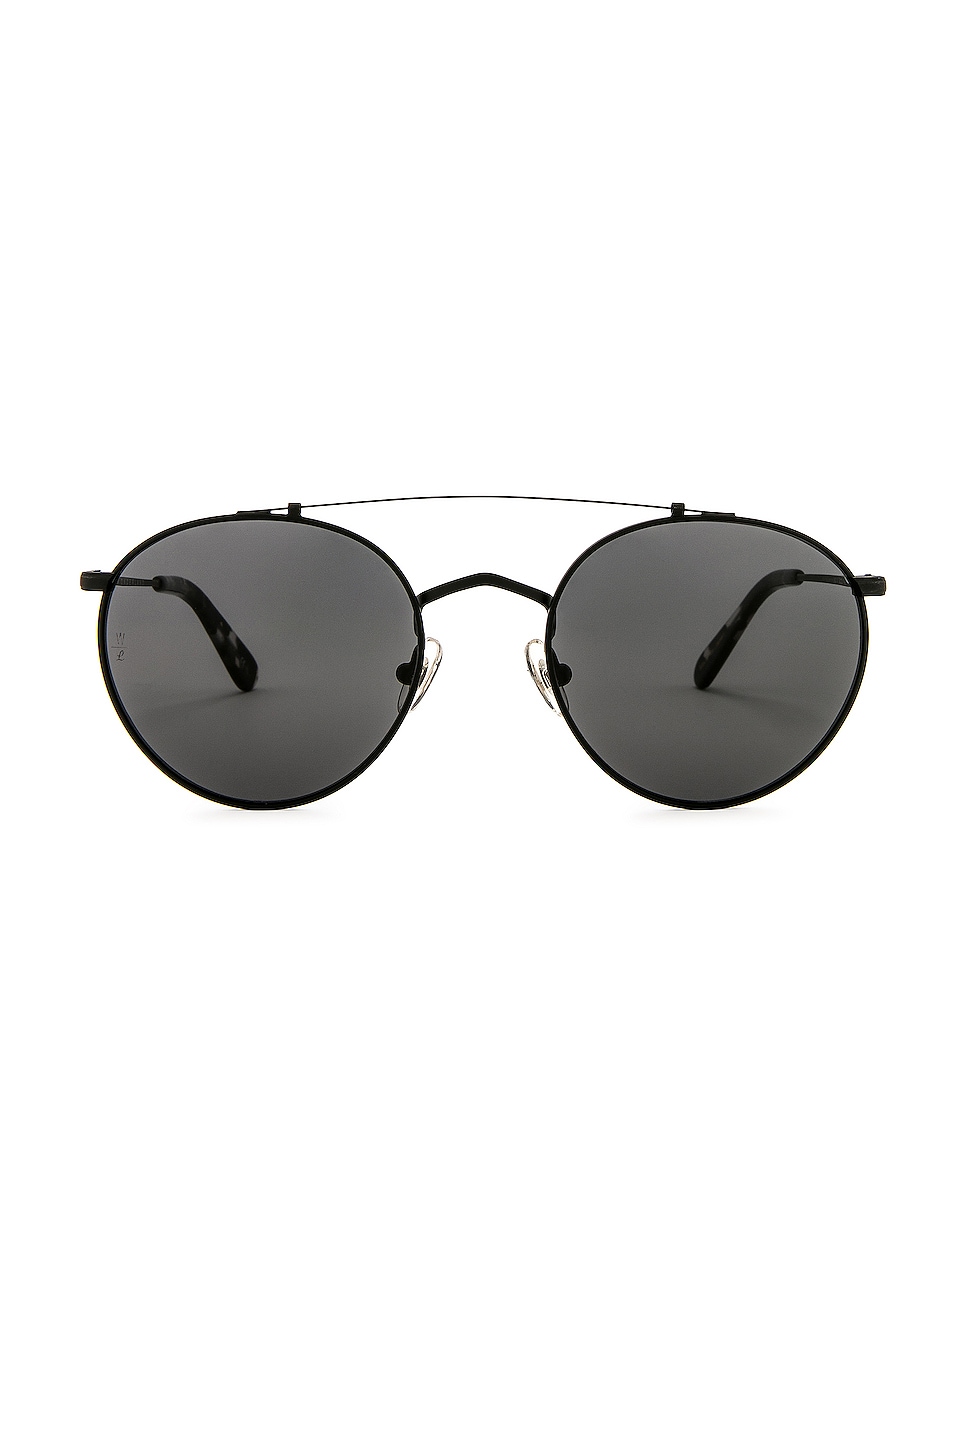 Солнцезащитные очки Wonderland Indio, цвет Matte Black Metal & Dark Black цена и фото